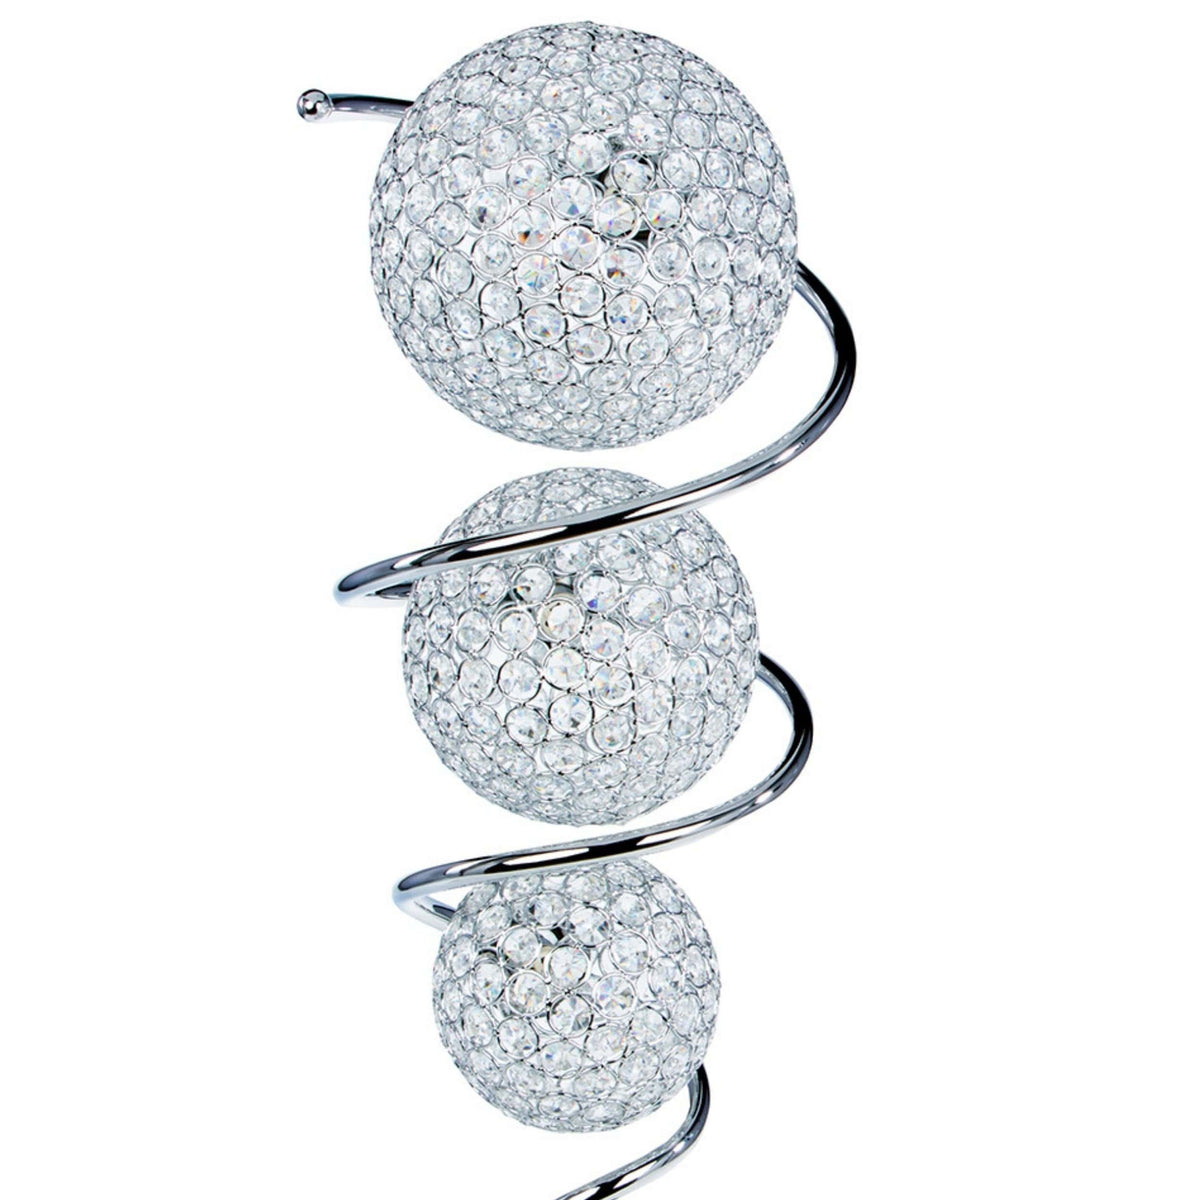 3LT Vertical Crystal Sphere Table Lamp